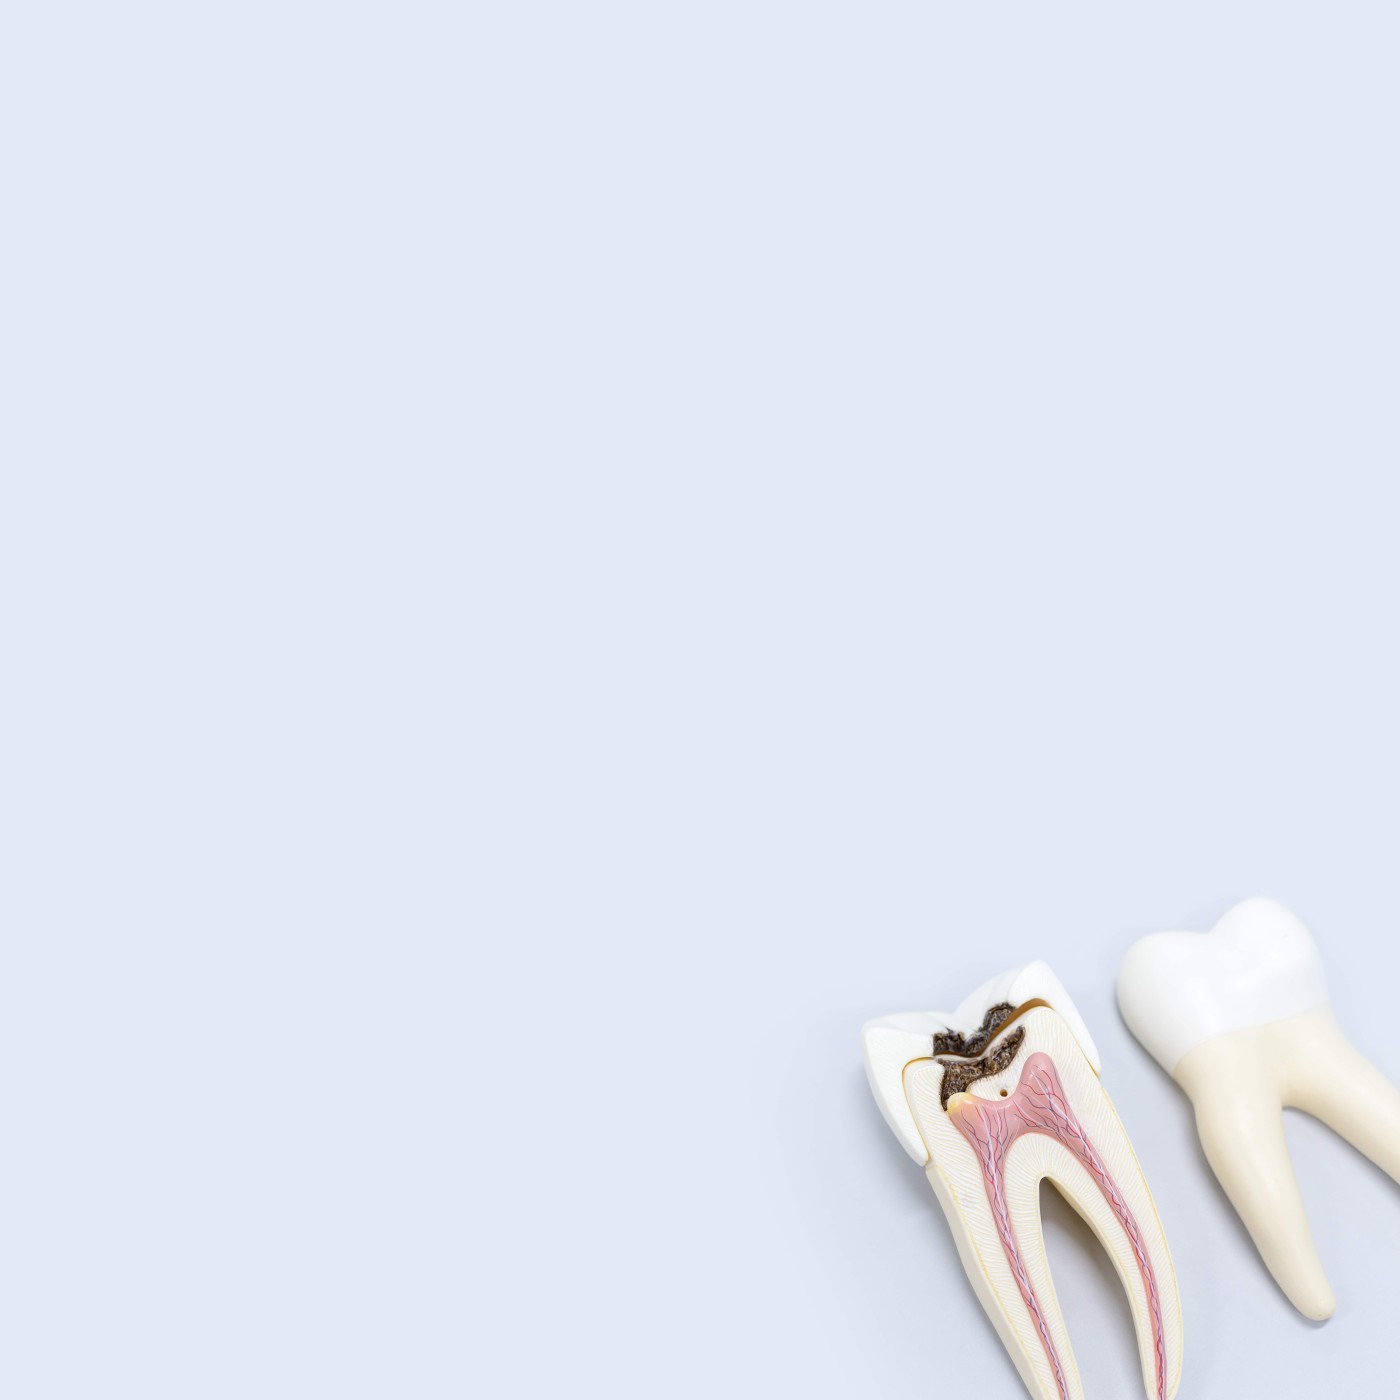 Удаление зуба